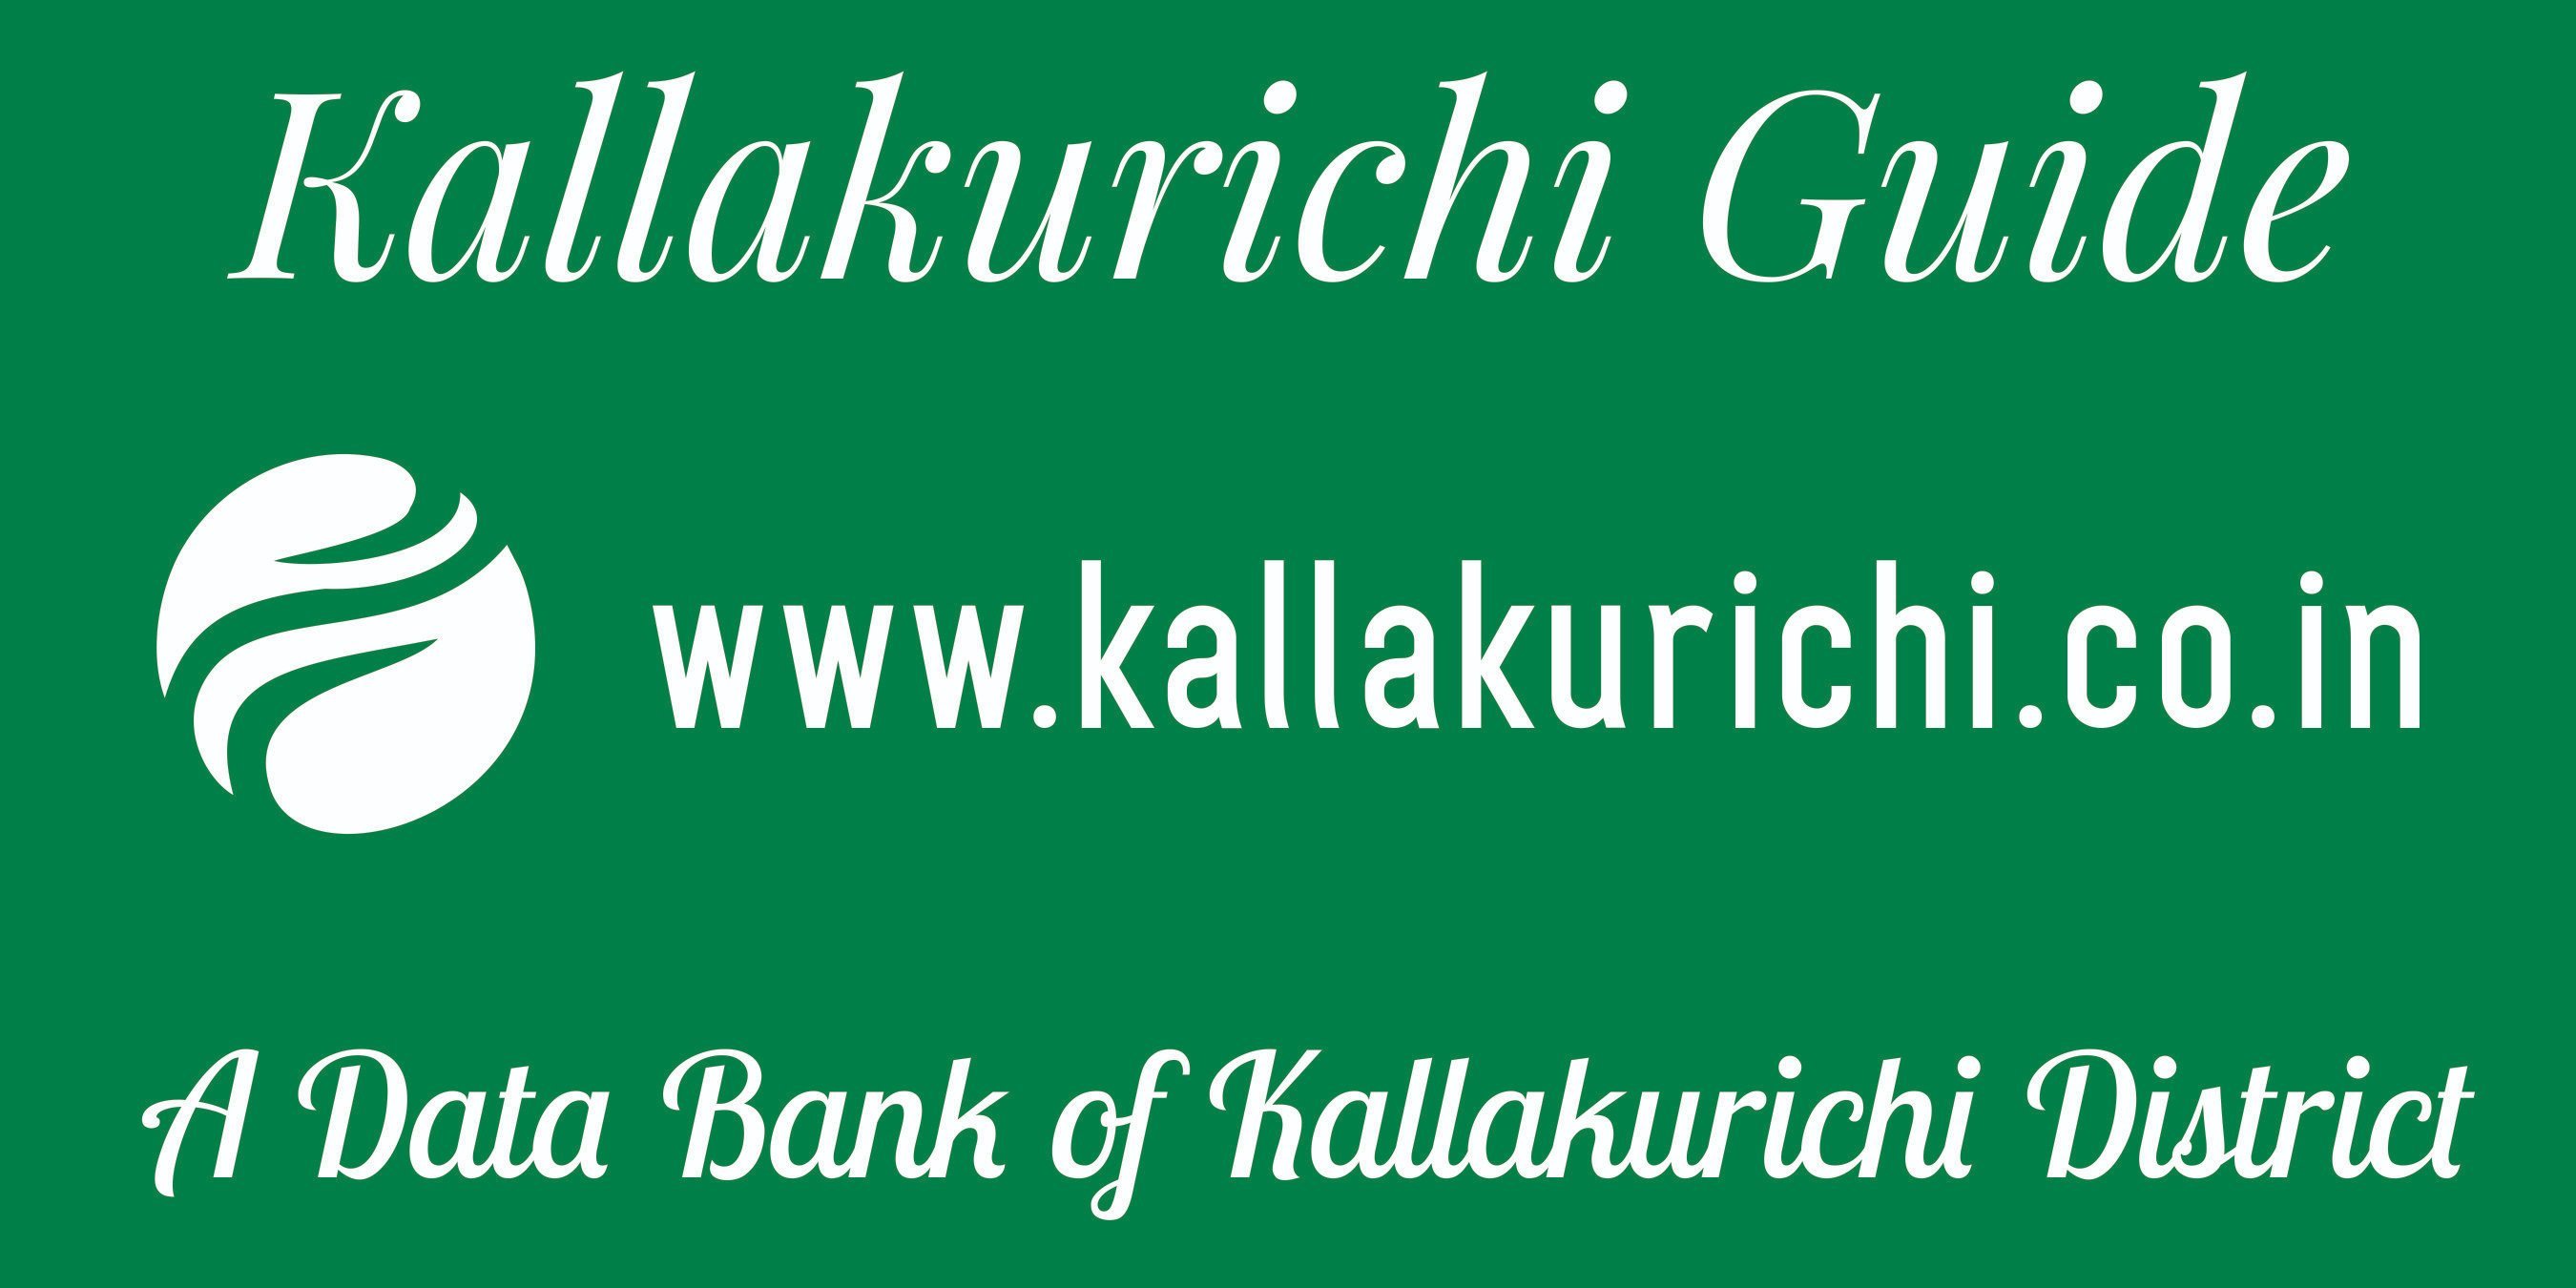 Kallakurichi Guide , https://t.co/nFtWbyfk9a
A Data Bank of Kallakurichi District